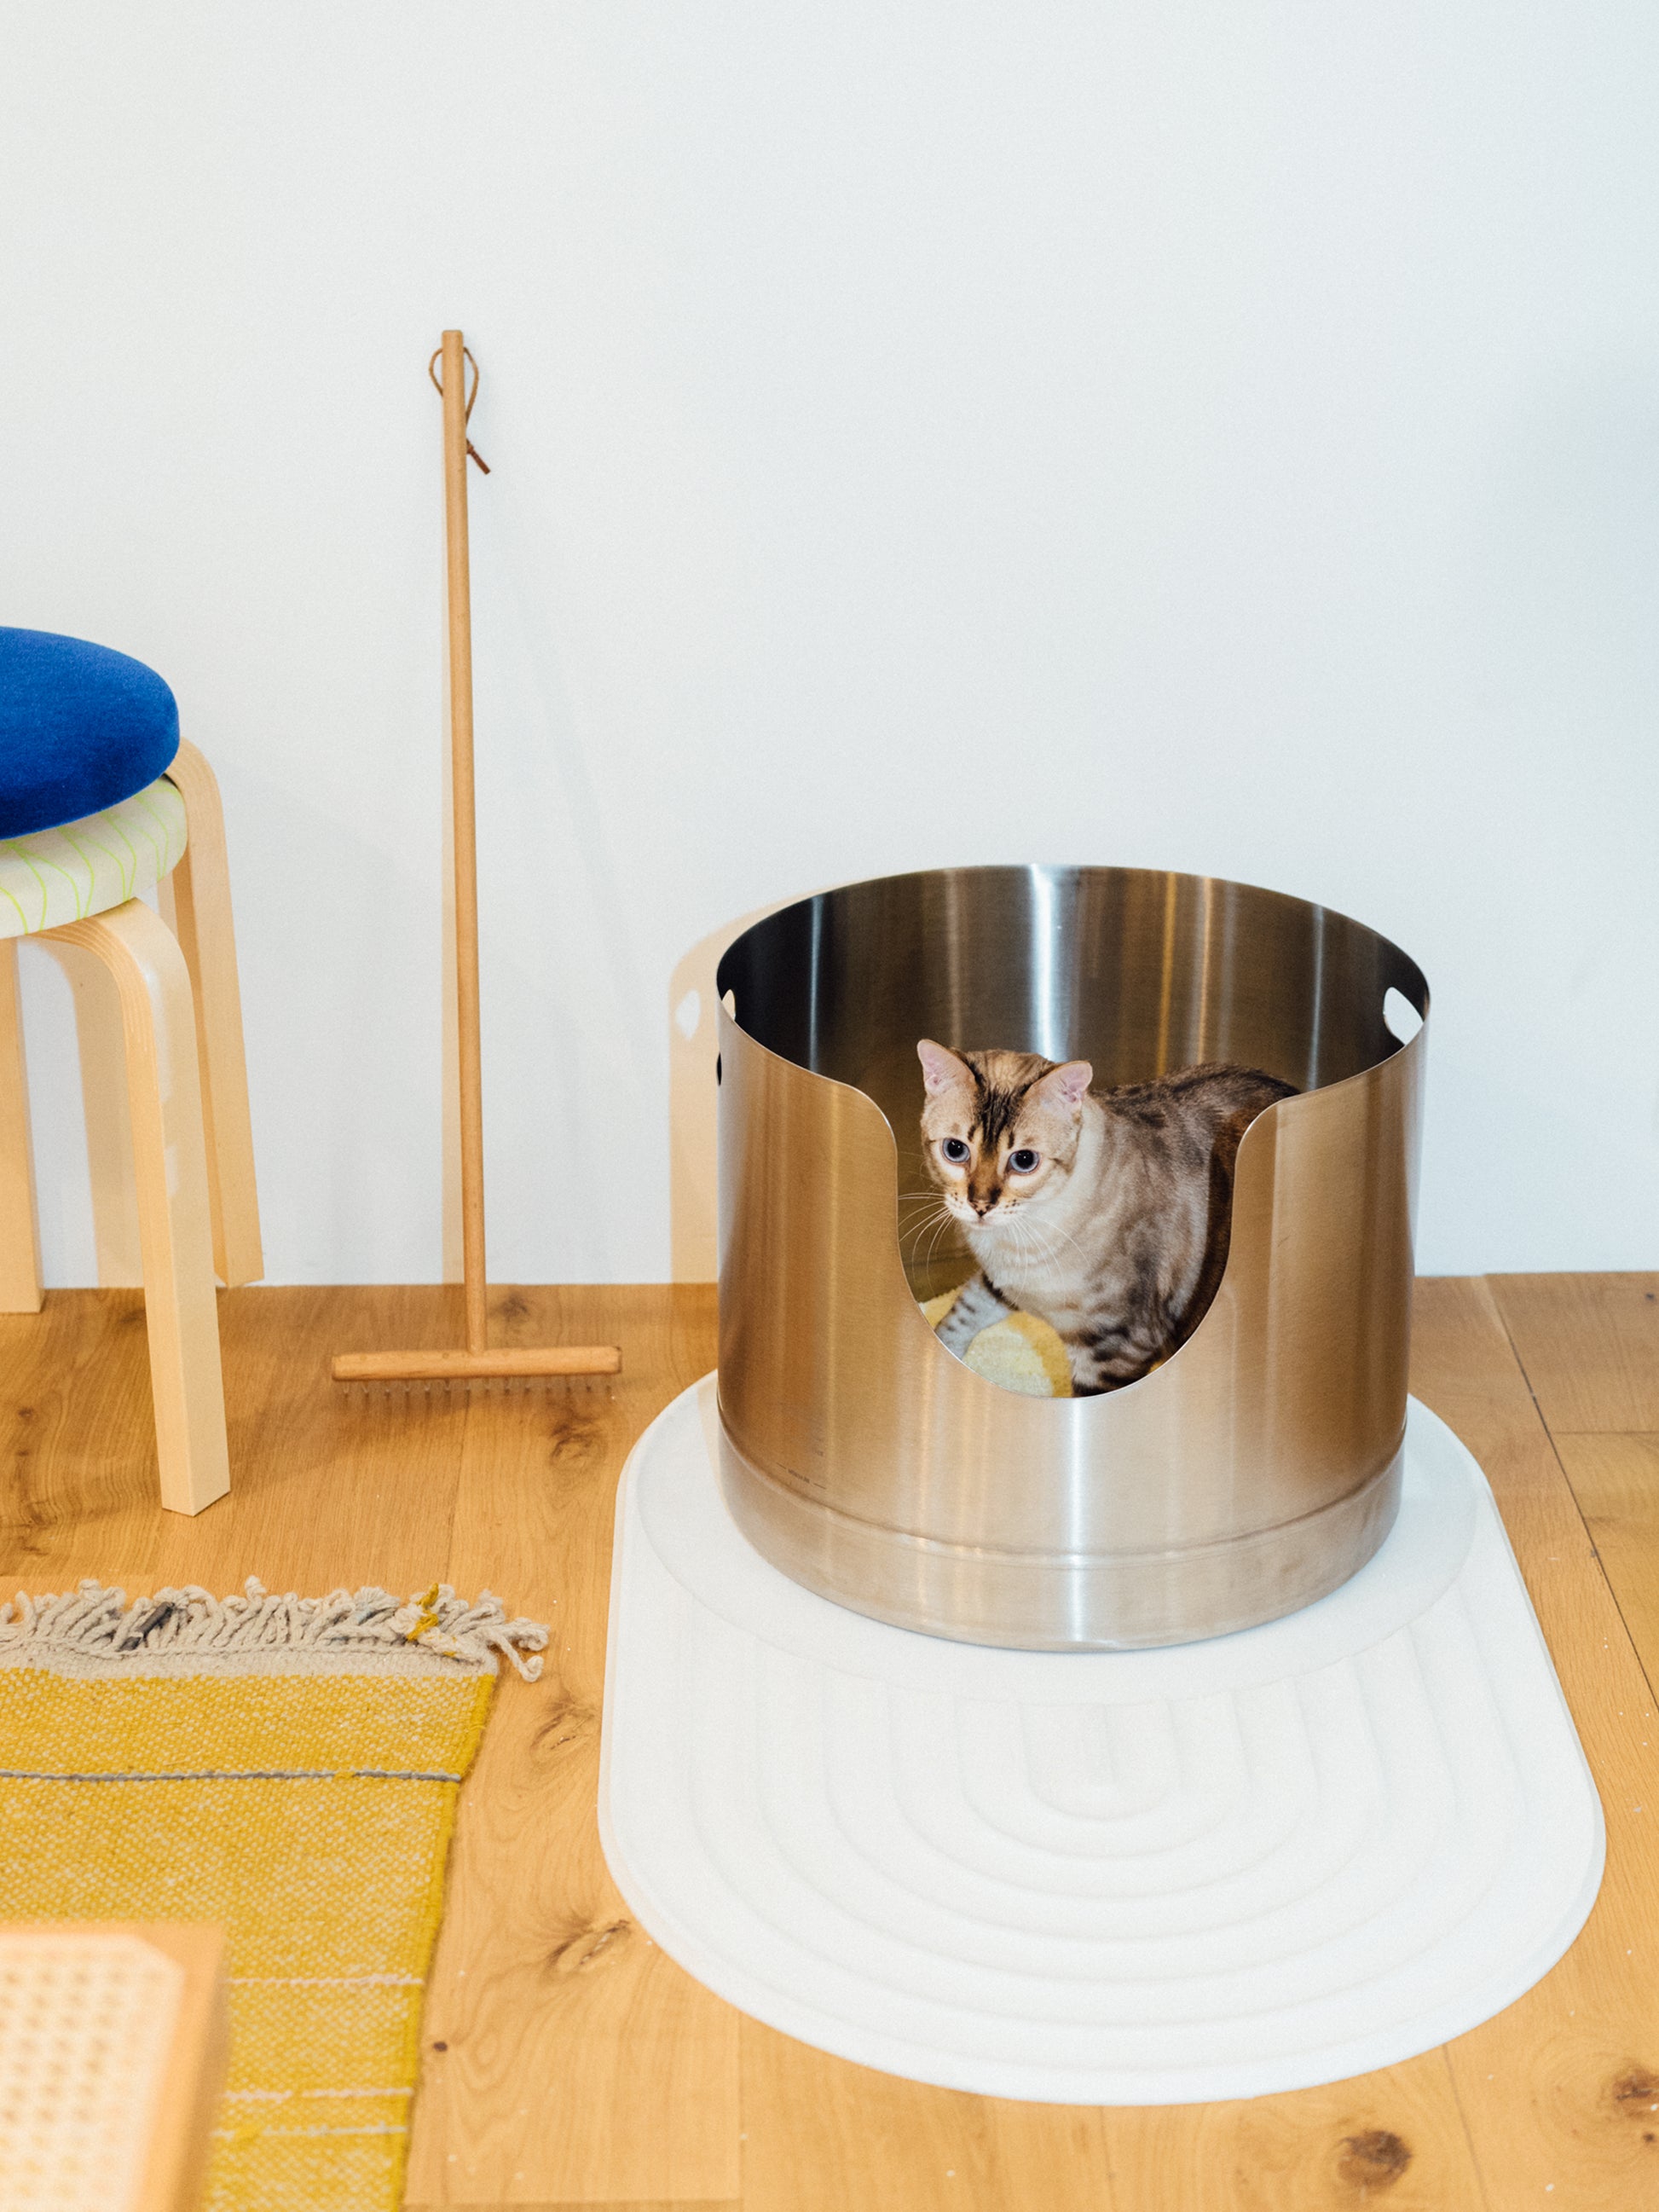 Kitty Litter Box Set Includes 4-Pieces - Shallow Cat Litter Pan, Cat Litter  Scoo